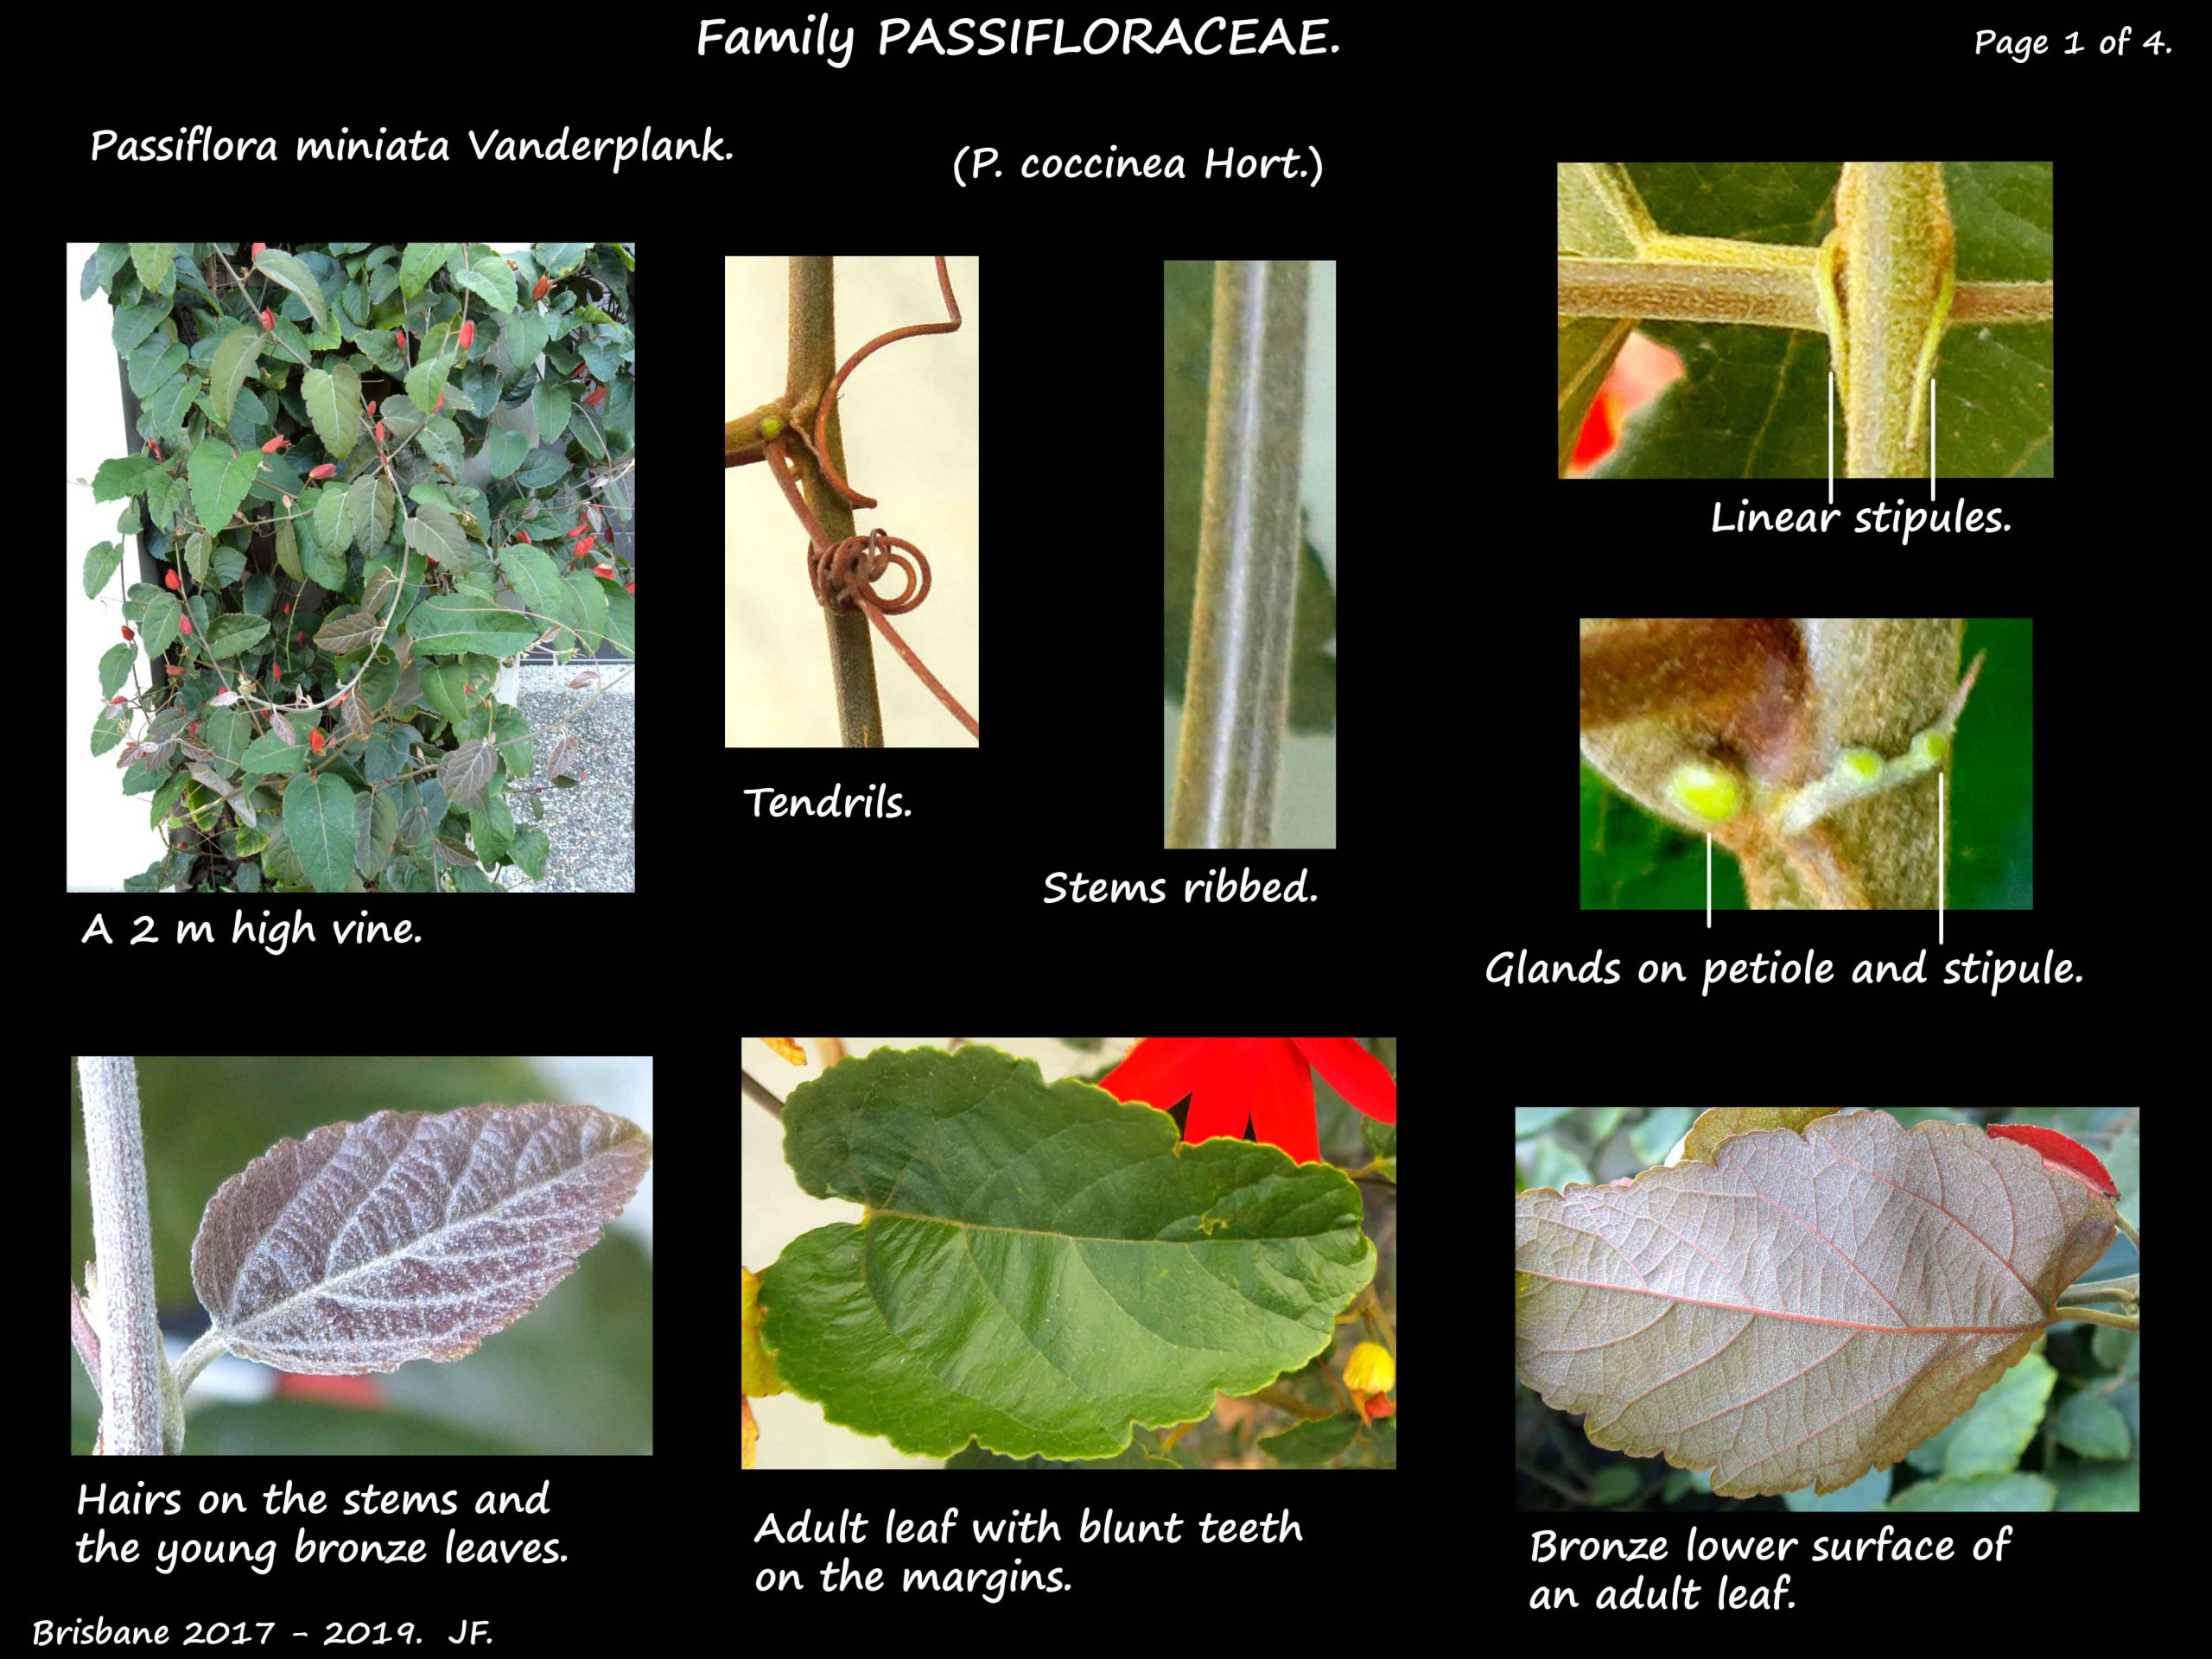 1 Passiflora miniata vine & leaves